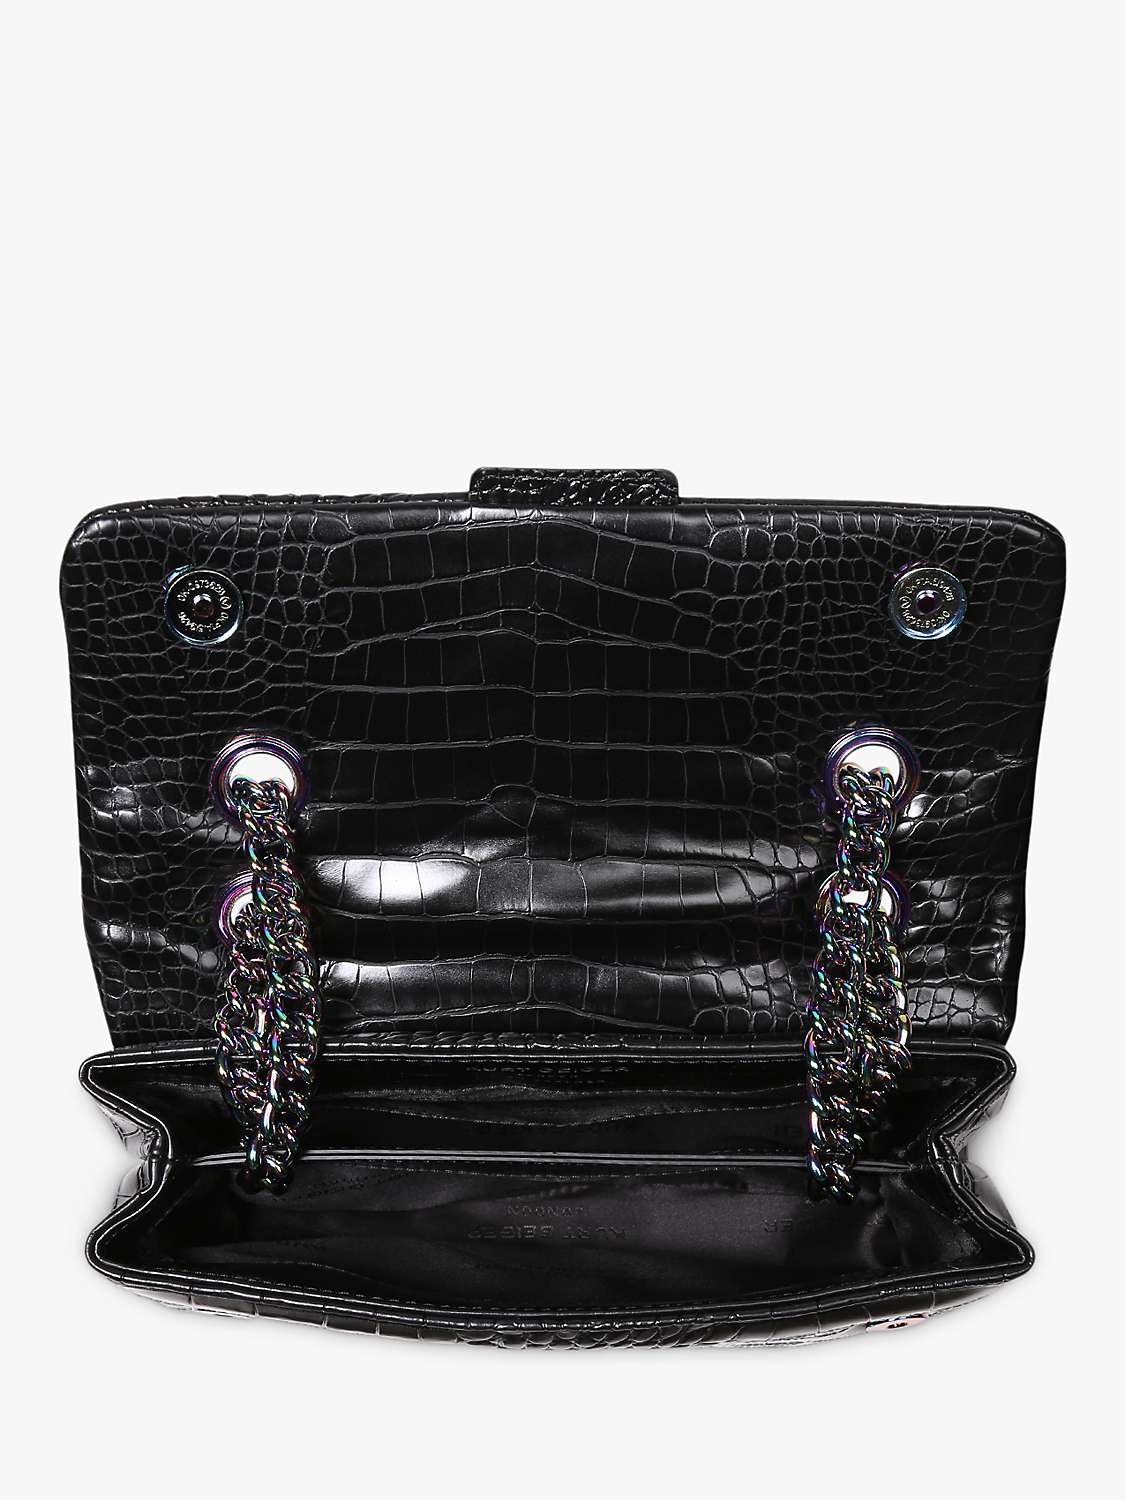 Buy Kurt Geiger London Kensington Croc Leather Shoulder Bag, Black Online at johnlewis.com